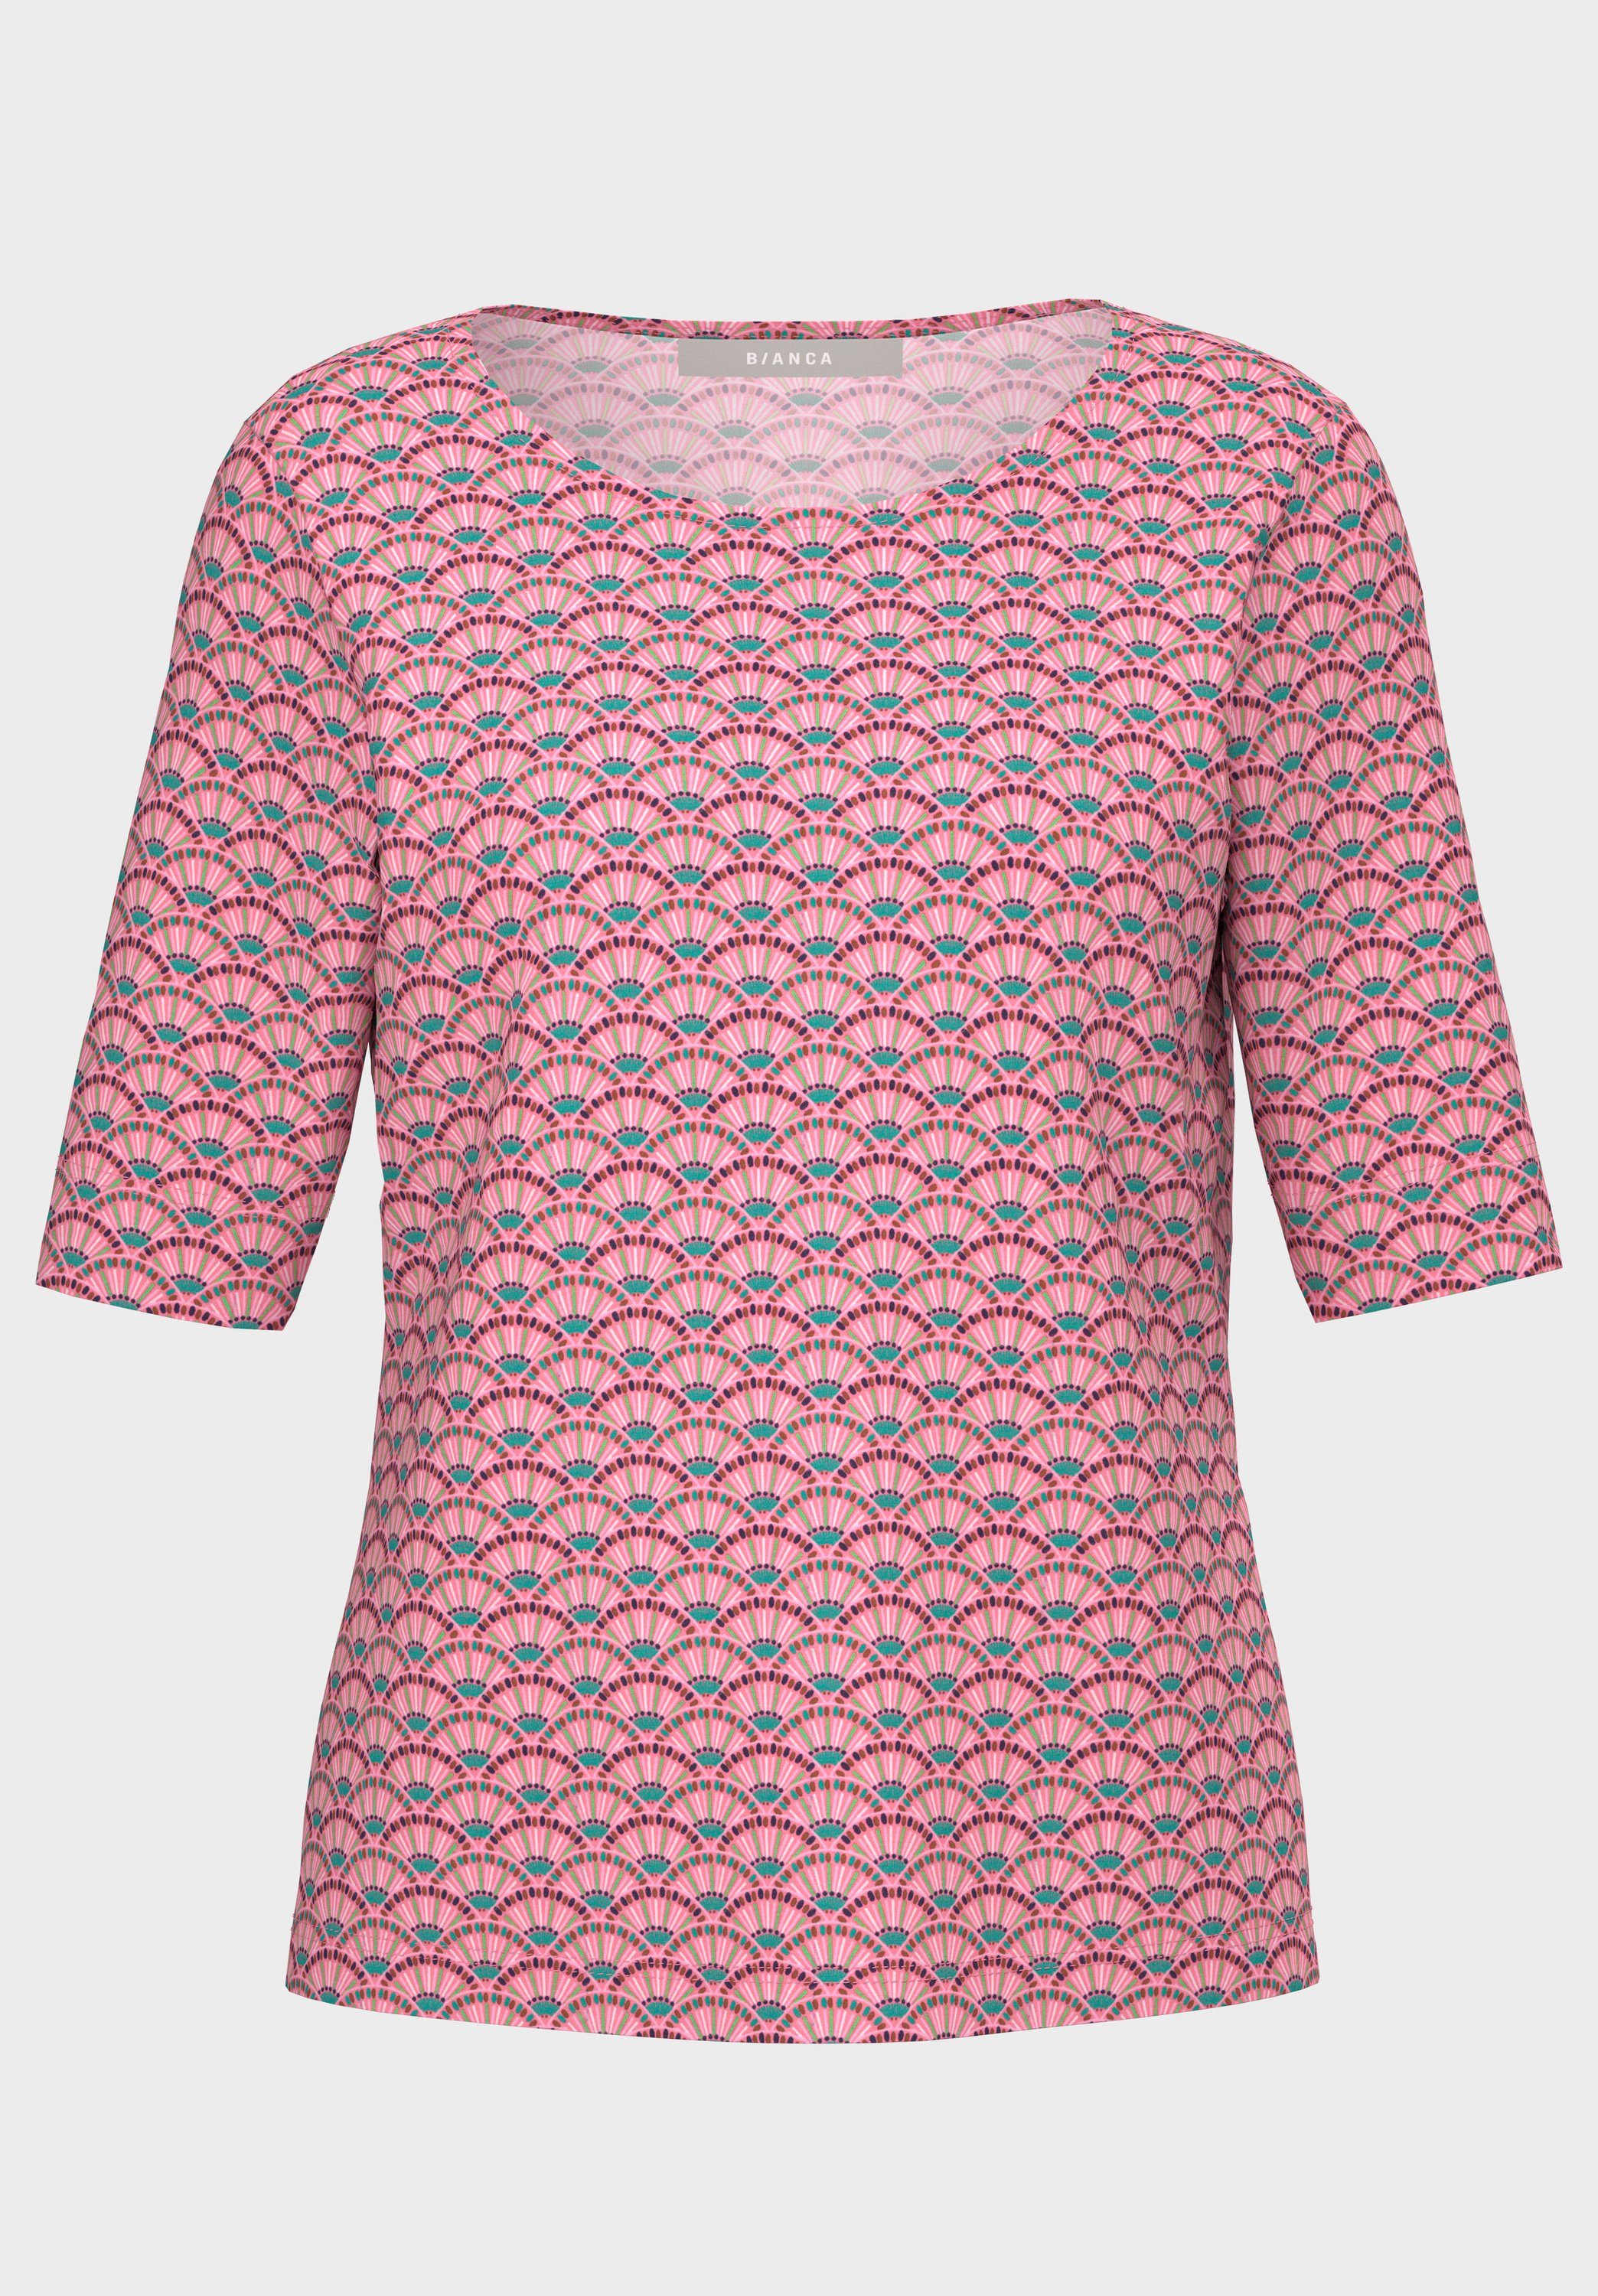 bianca Print-Shirt MALVE mit Allover-Muster in angesagten Farben